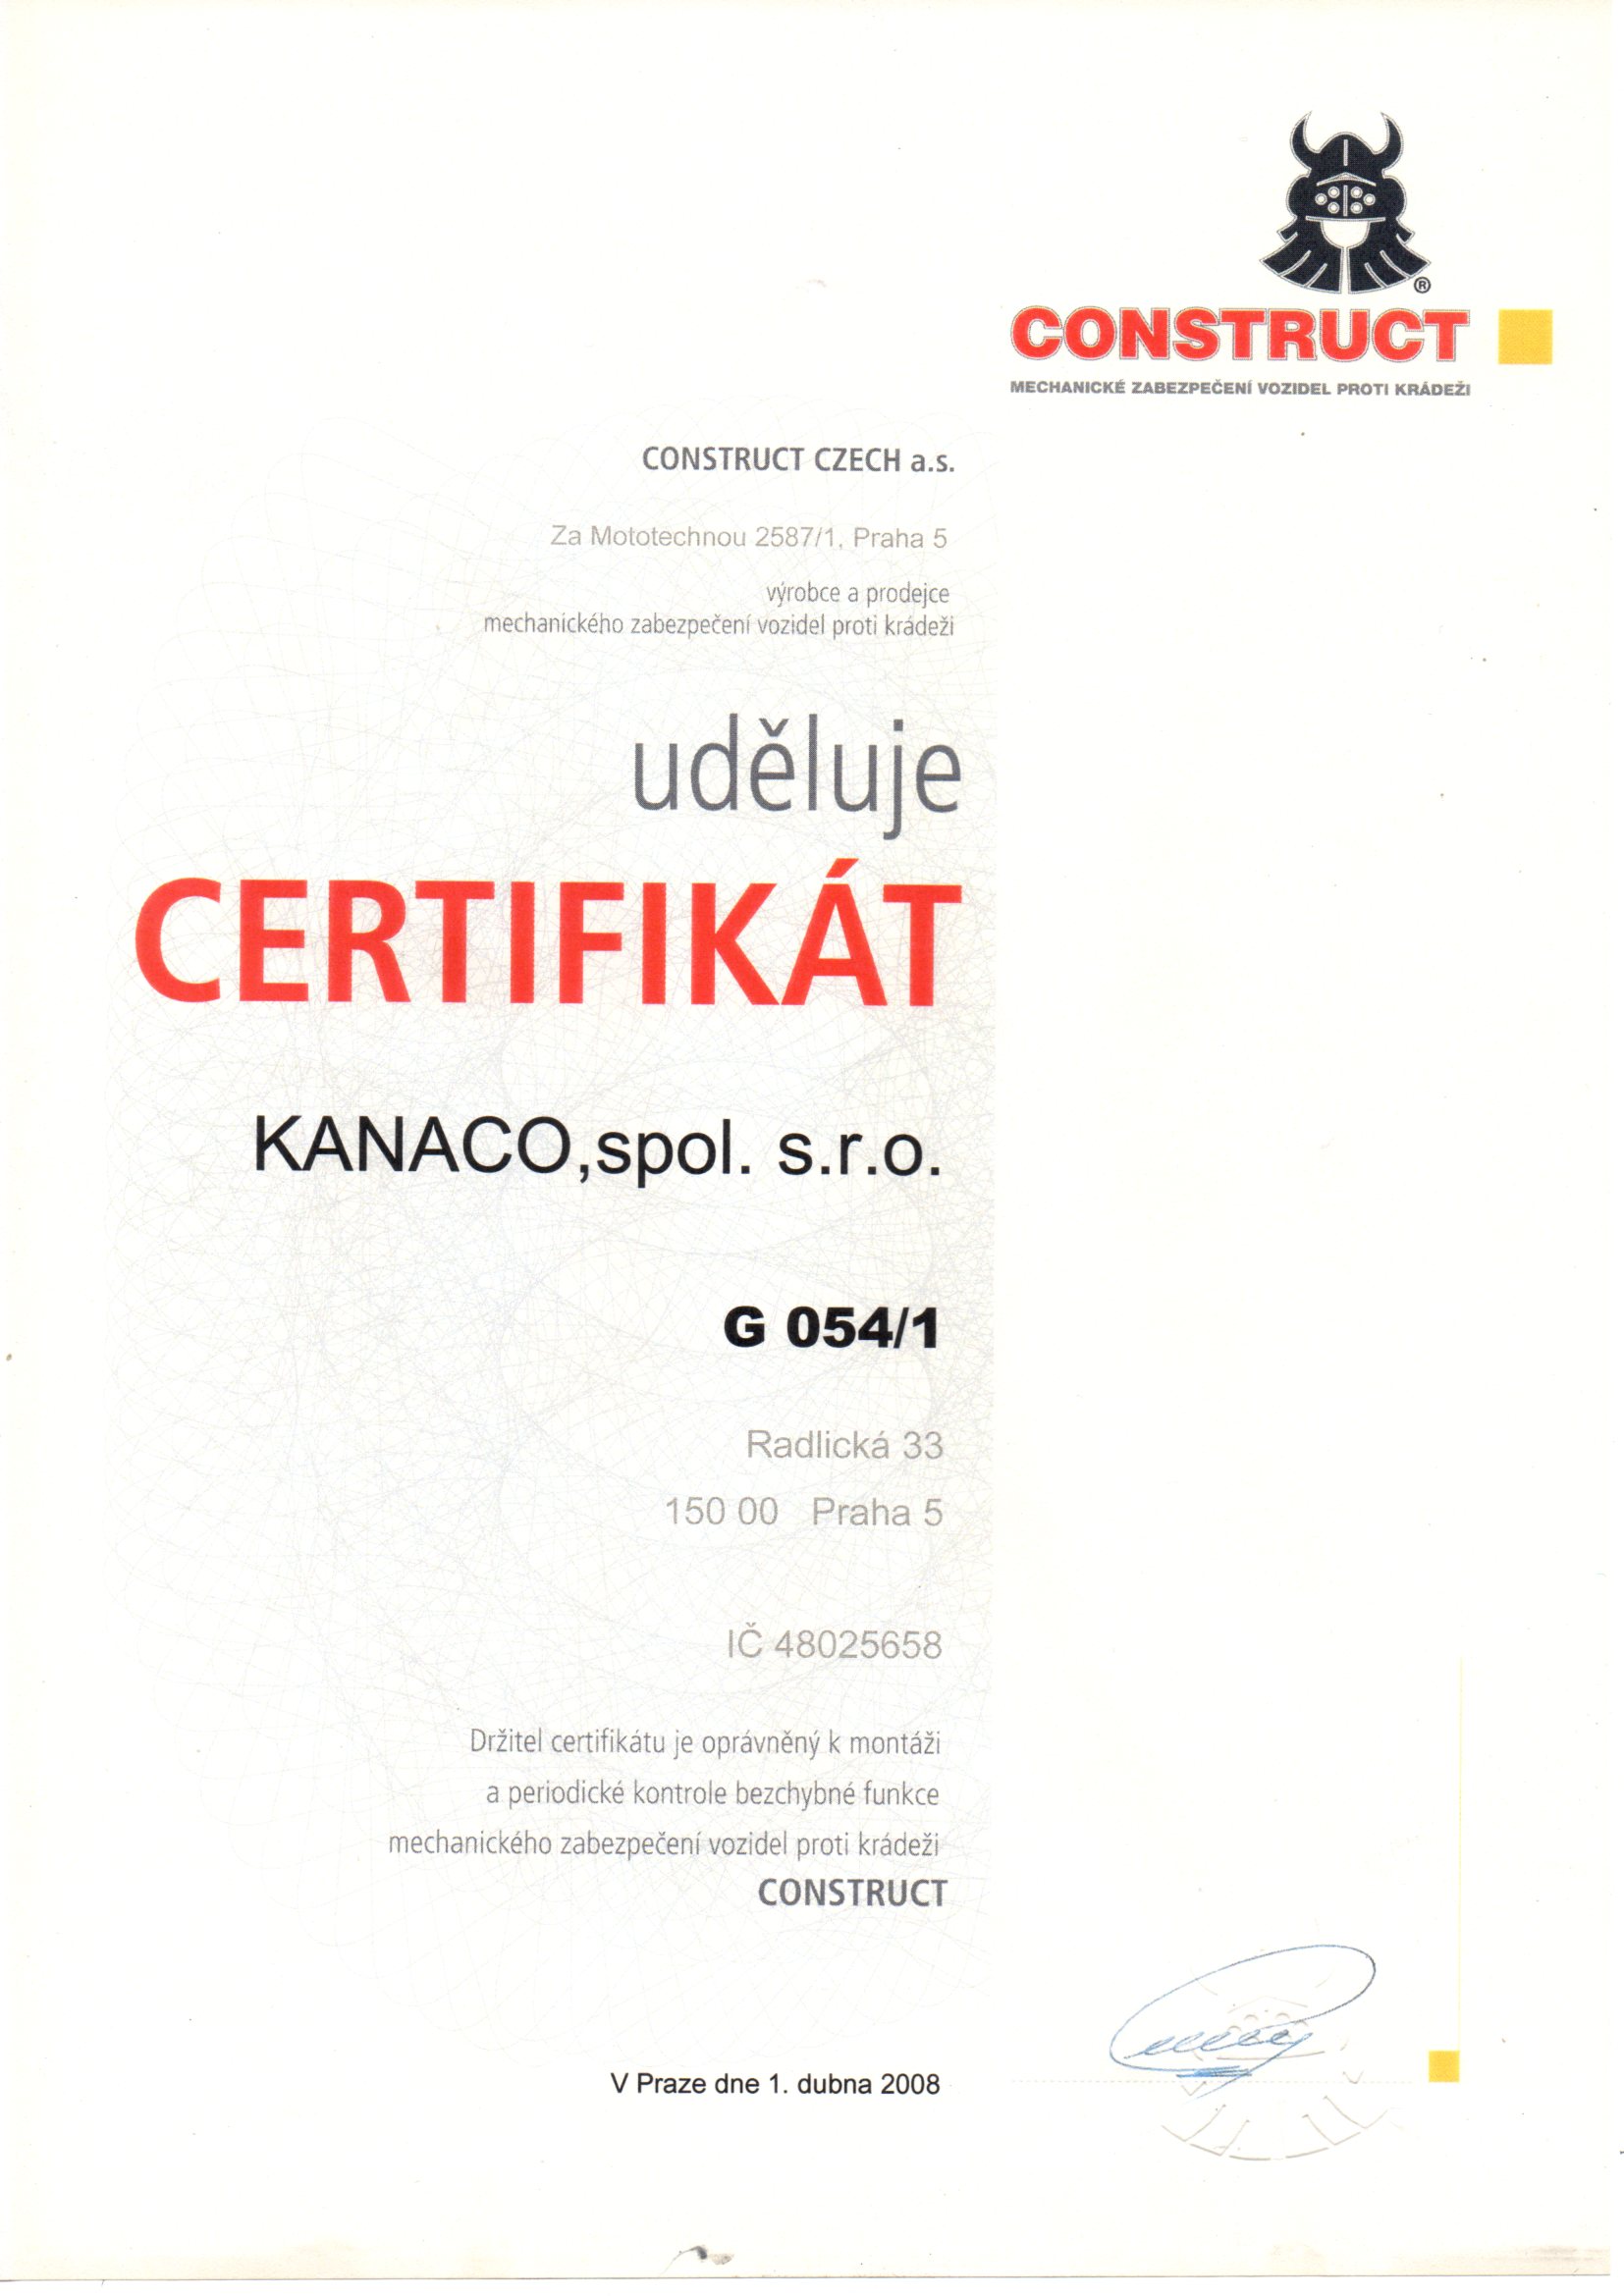 Certifikát Construct montážní dílny Kanaco